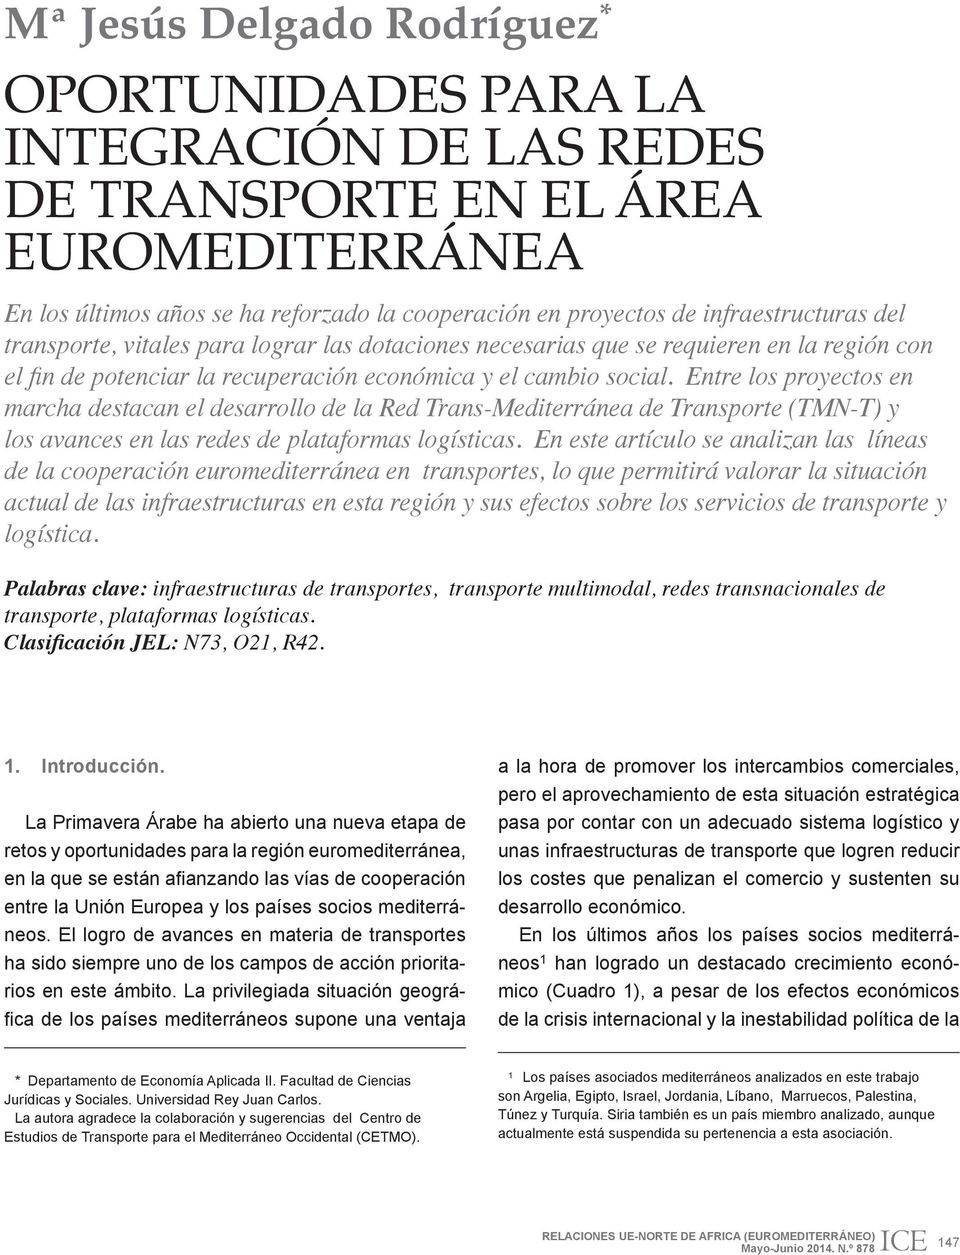 Entre los proyectos en marcha destacan el desarrollo de la Red Trans-Mediterránea de Transporte (TMN-T) y los avances en las redes de plataformas logísticas.